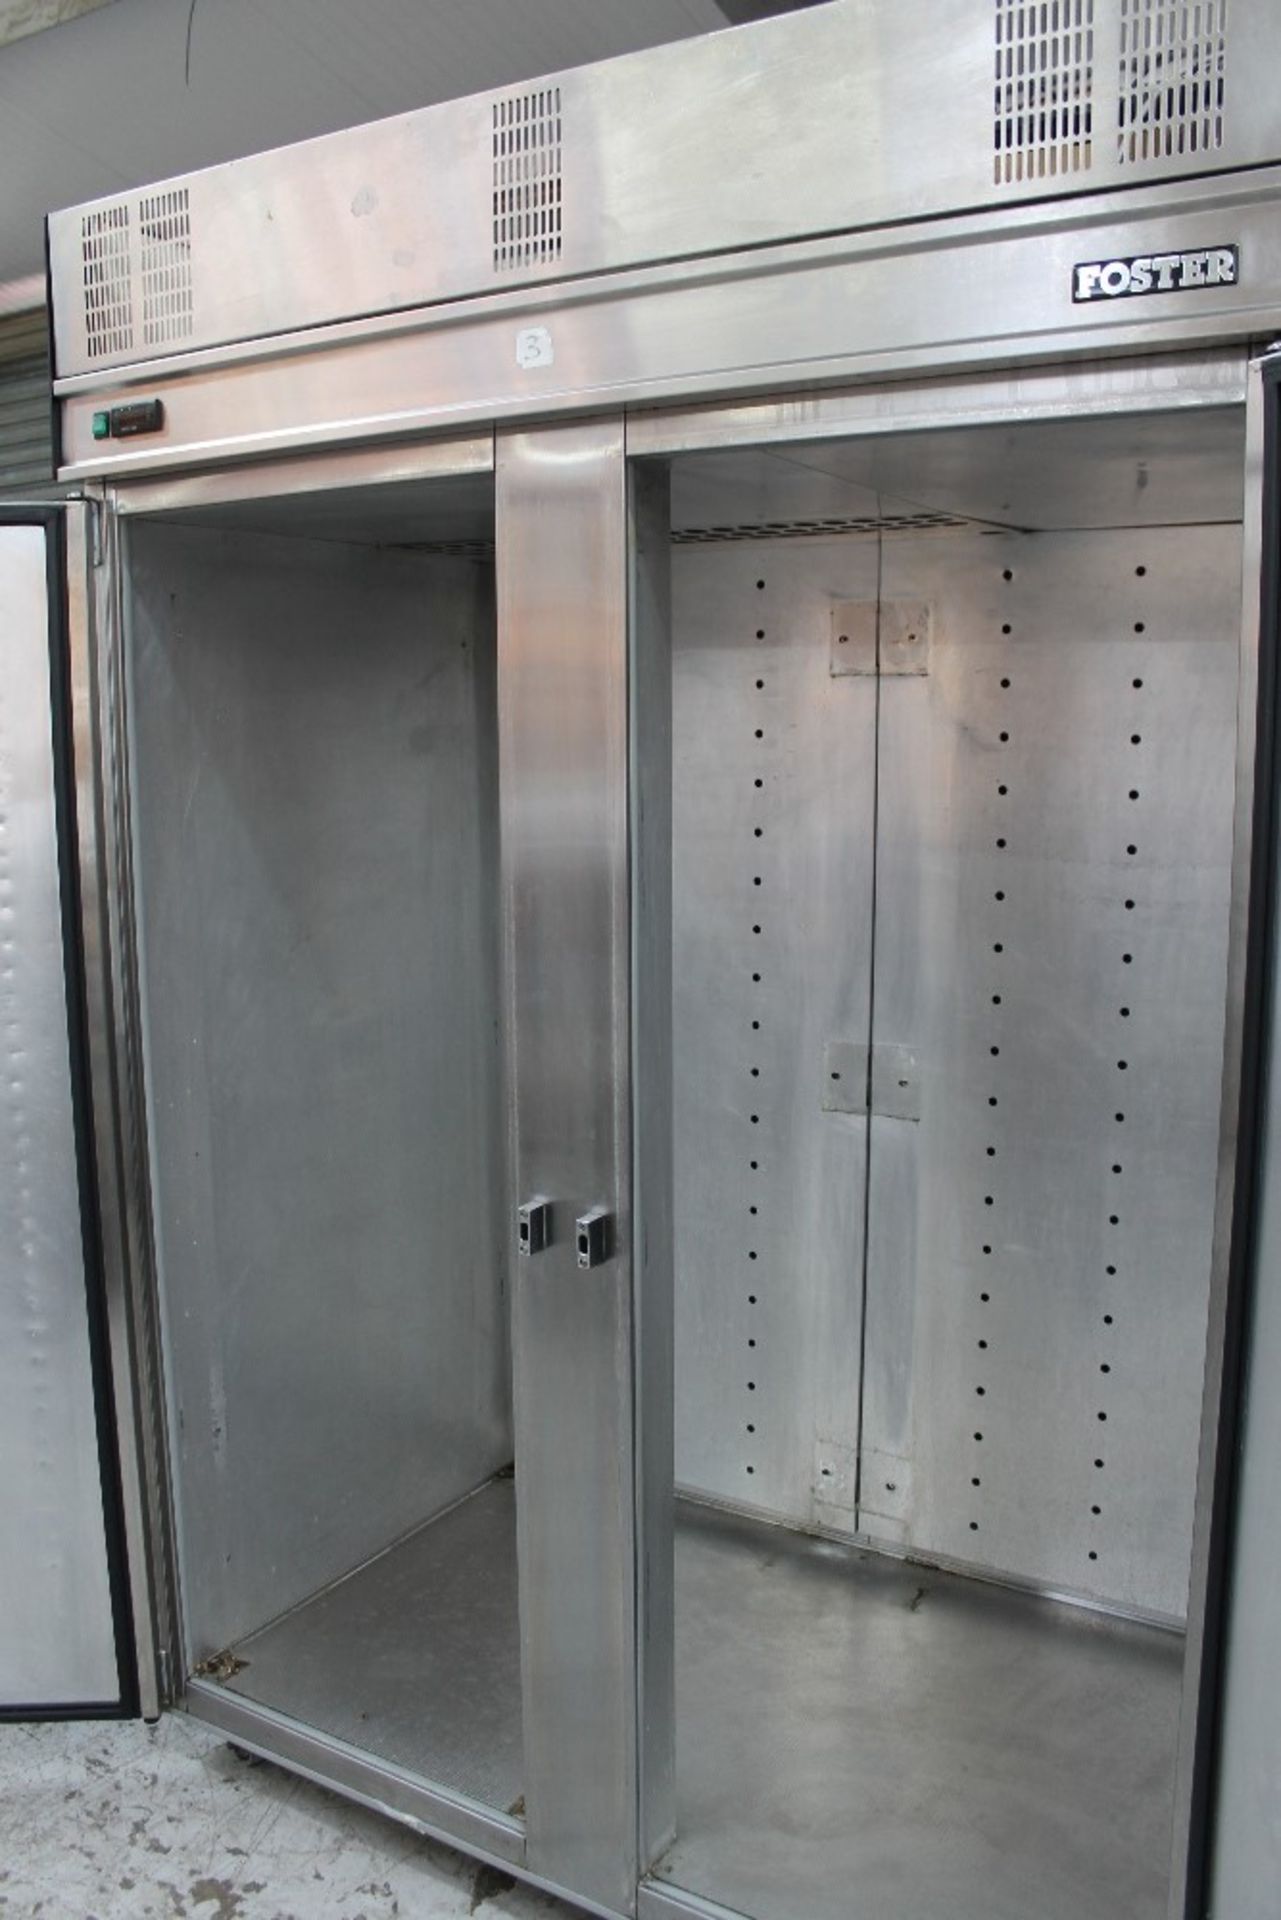 Foster Stainless Steel Double Door Fridge – NO Shelves – NO VAT - Image 2 of 2